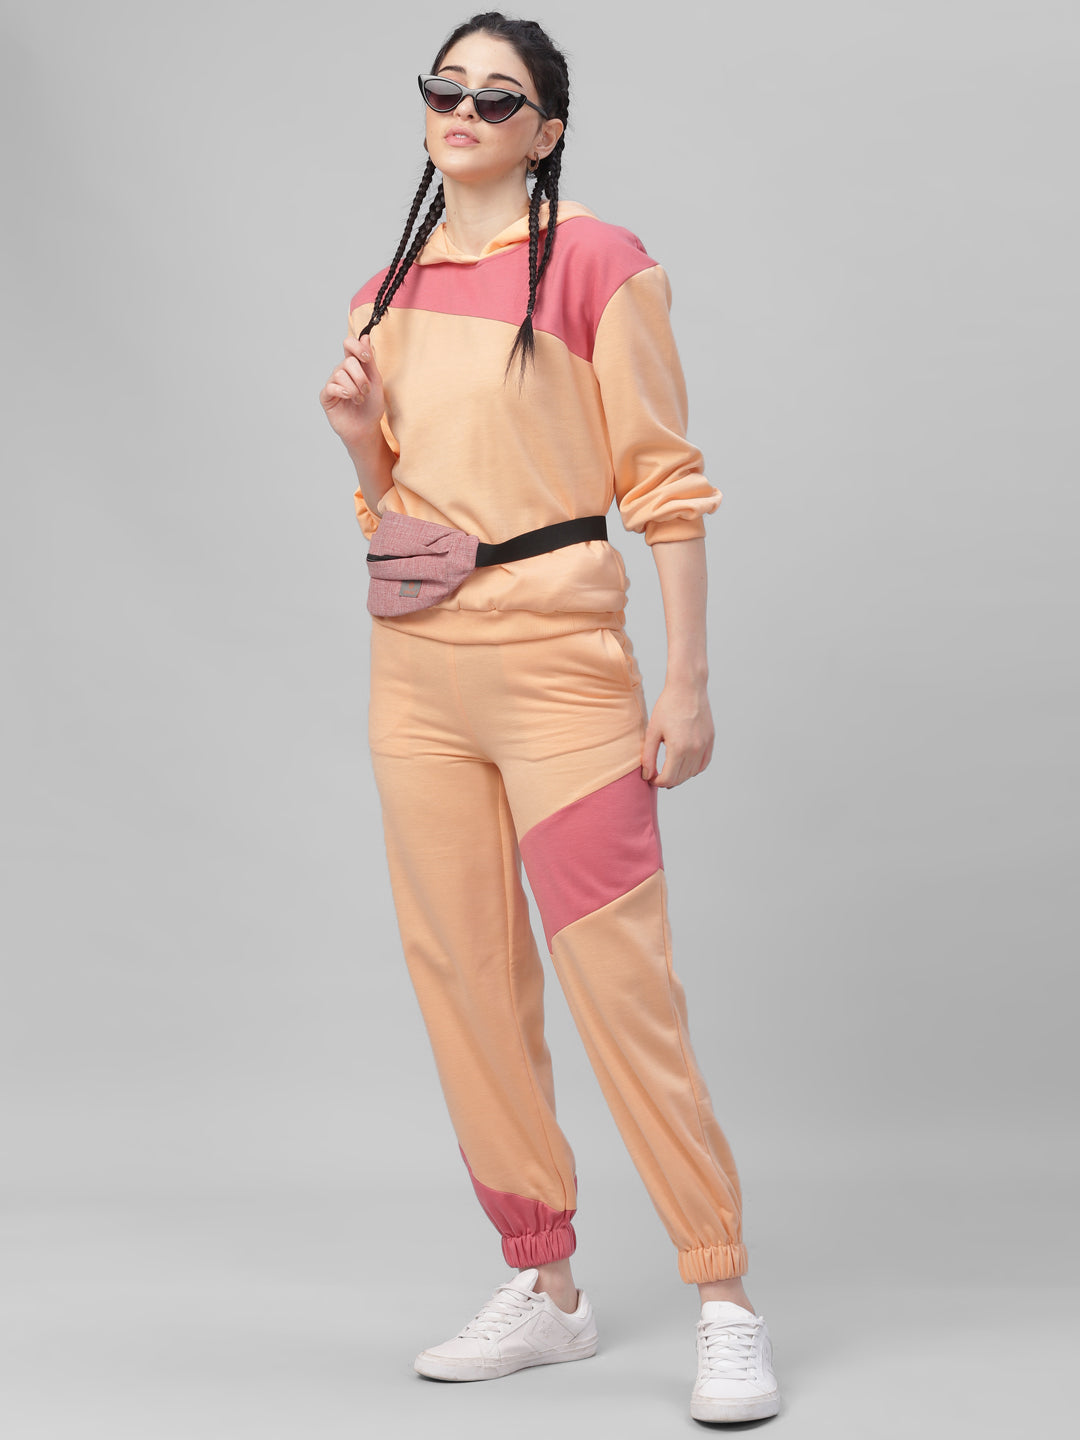 Athena Women Peach-Coloured & Pink Colourblocked Joggers - Athena Lifestyle